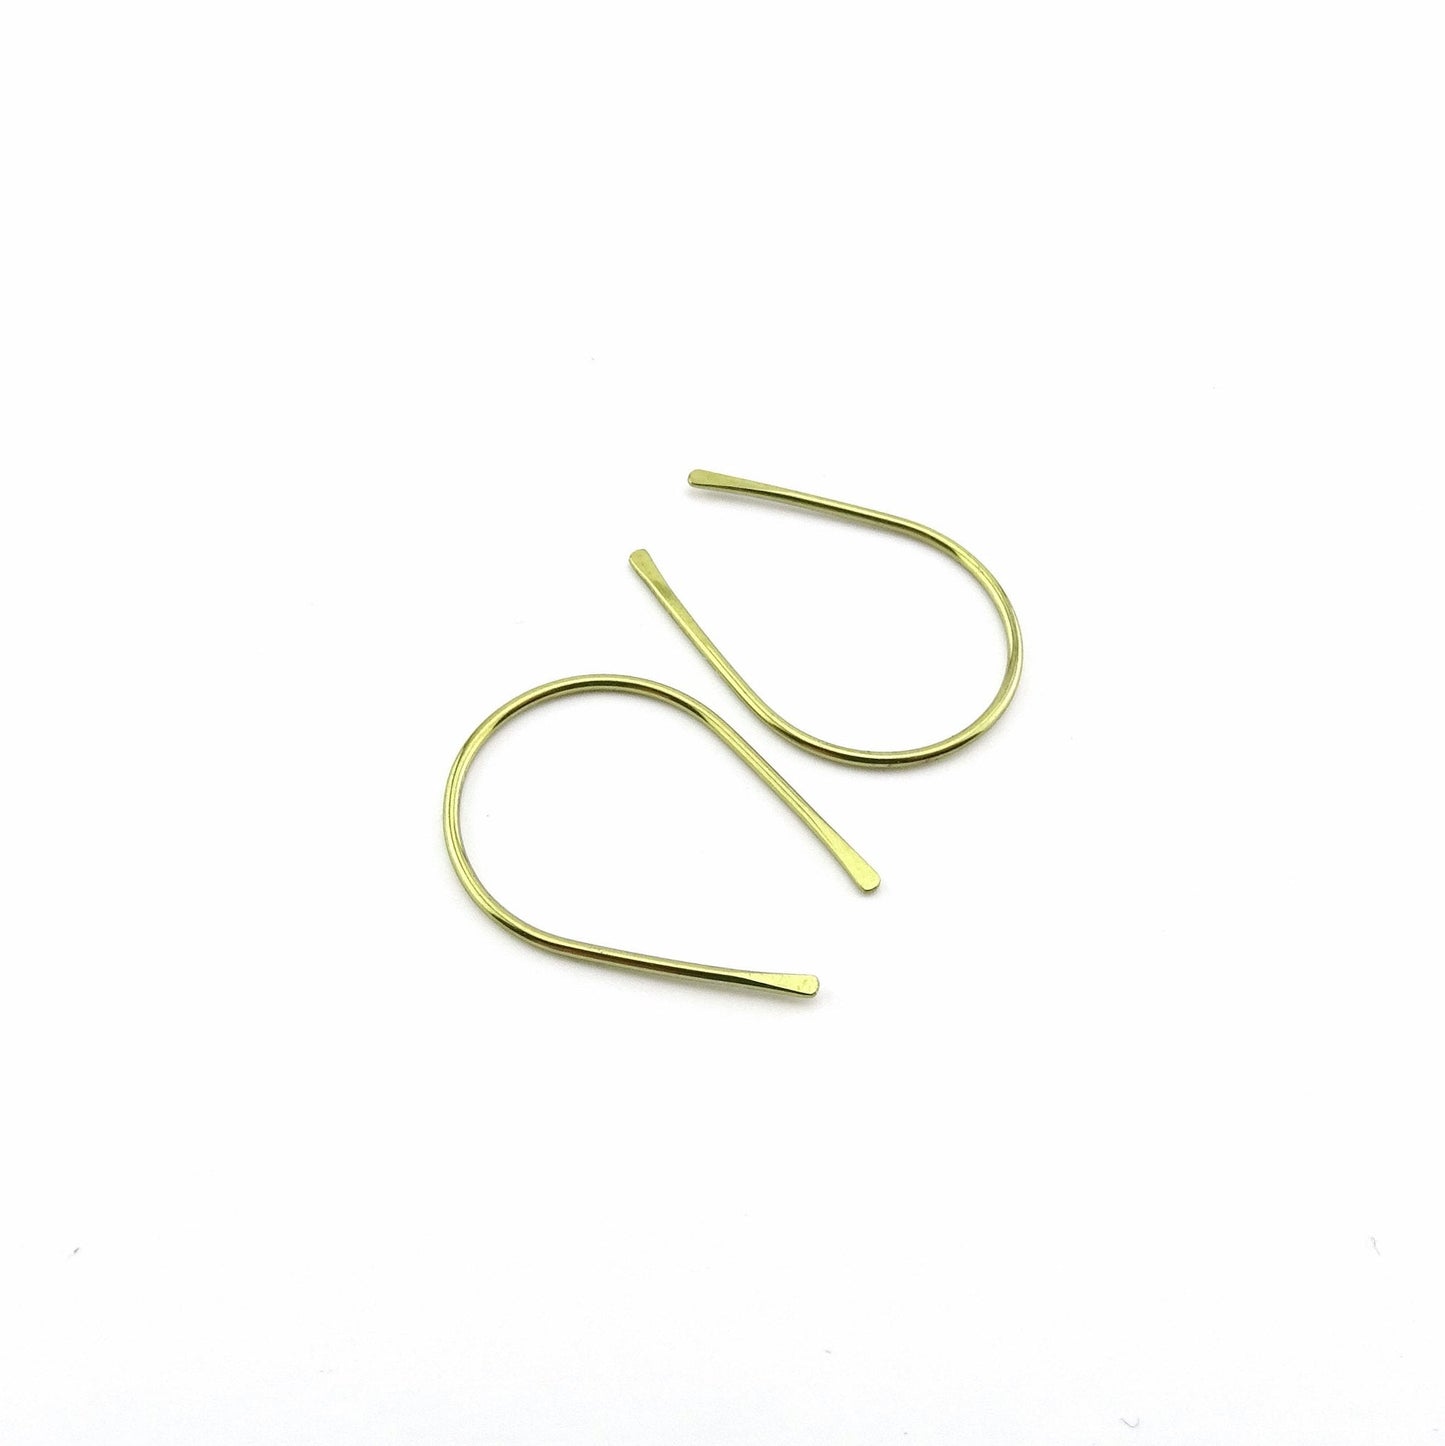 Gold Niobium Horseshoe Threader Earrings, Nickel Free Hypoallergenic Threaders for Sensitive Ears, U Shaped Arch Open Hoop Slider Earrings